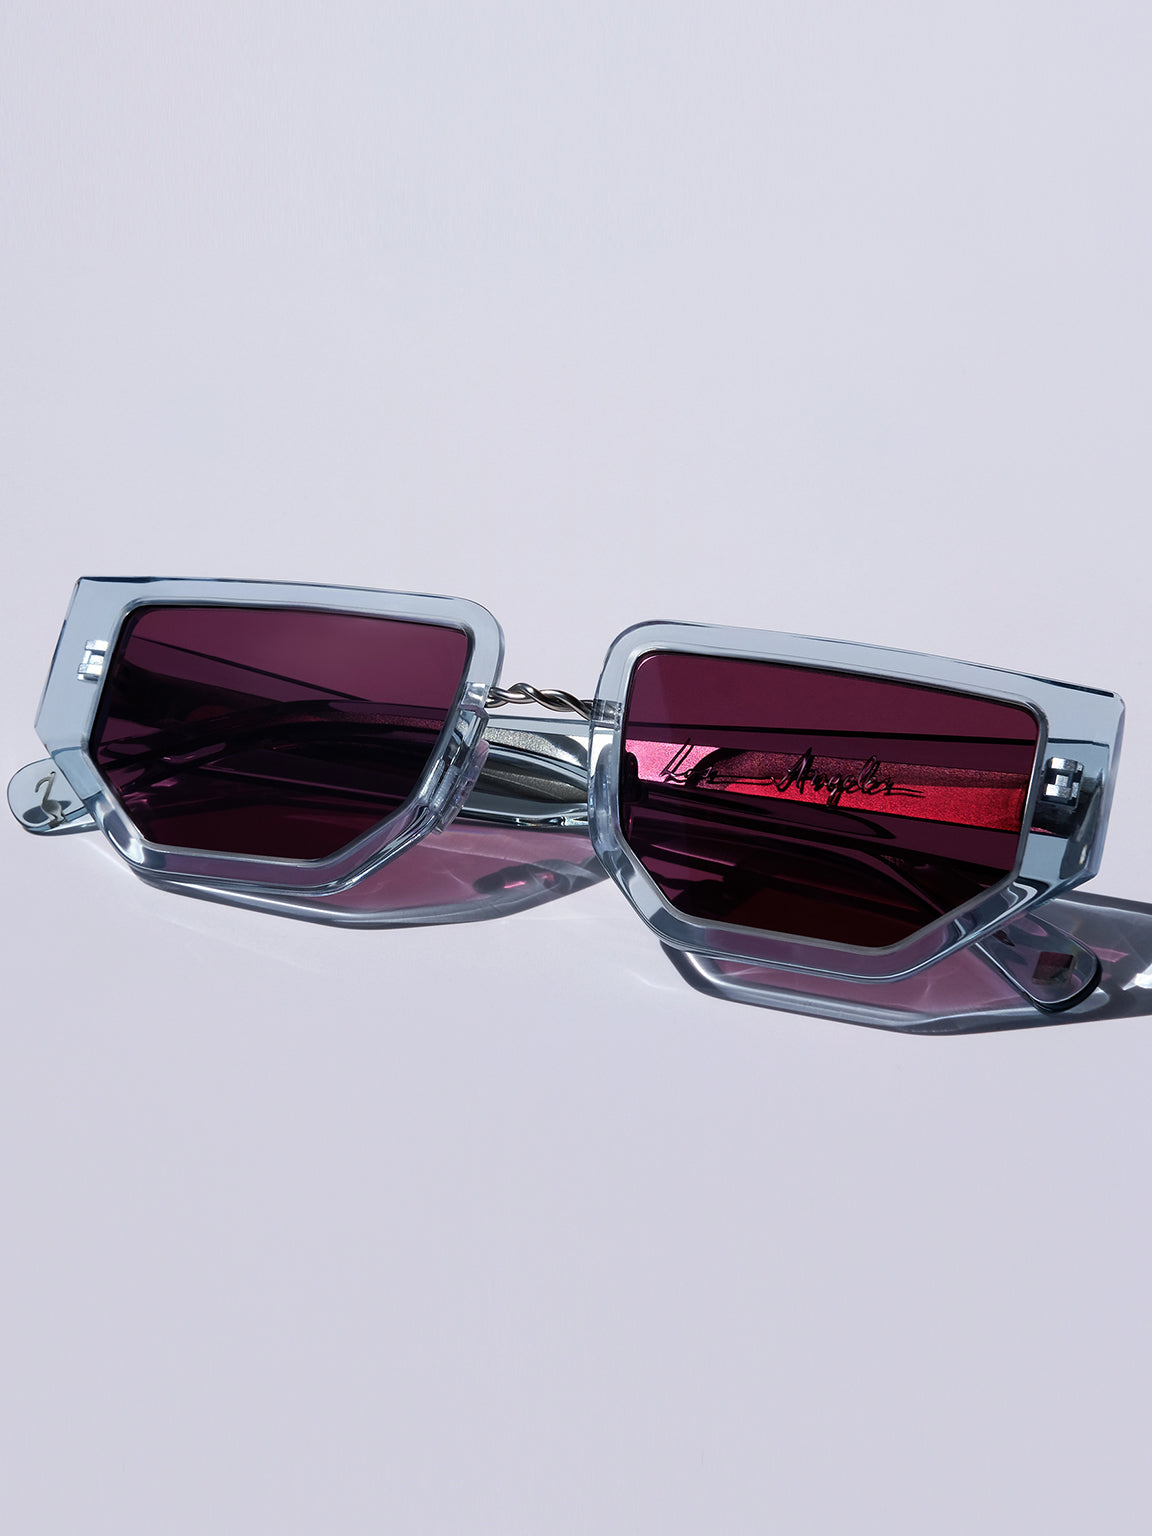 Louis Vuitton 1.1 Millionaires Sunglasses Gets a Futuristic Twist